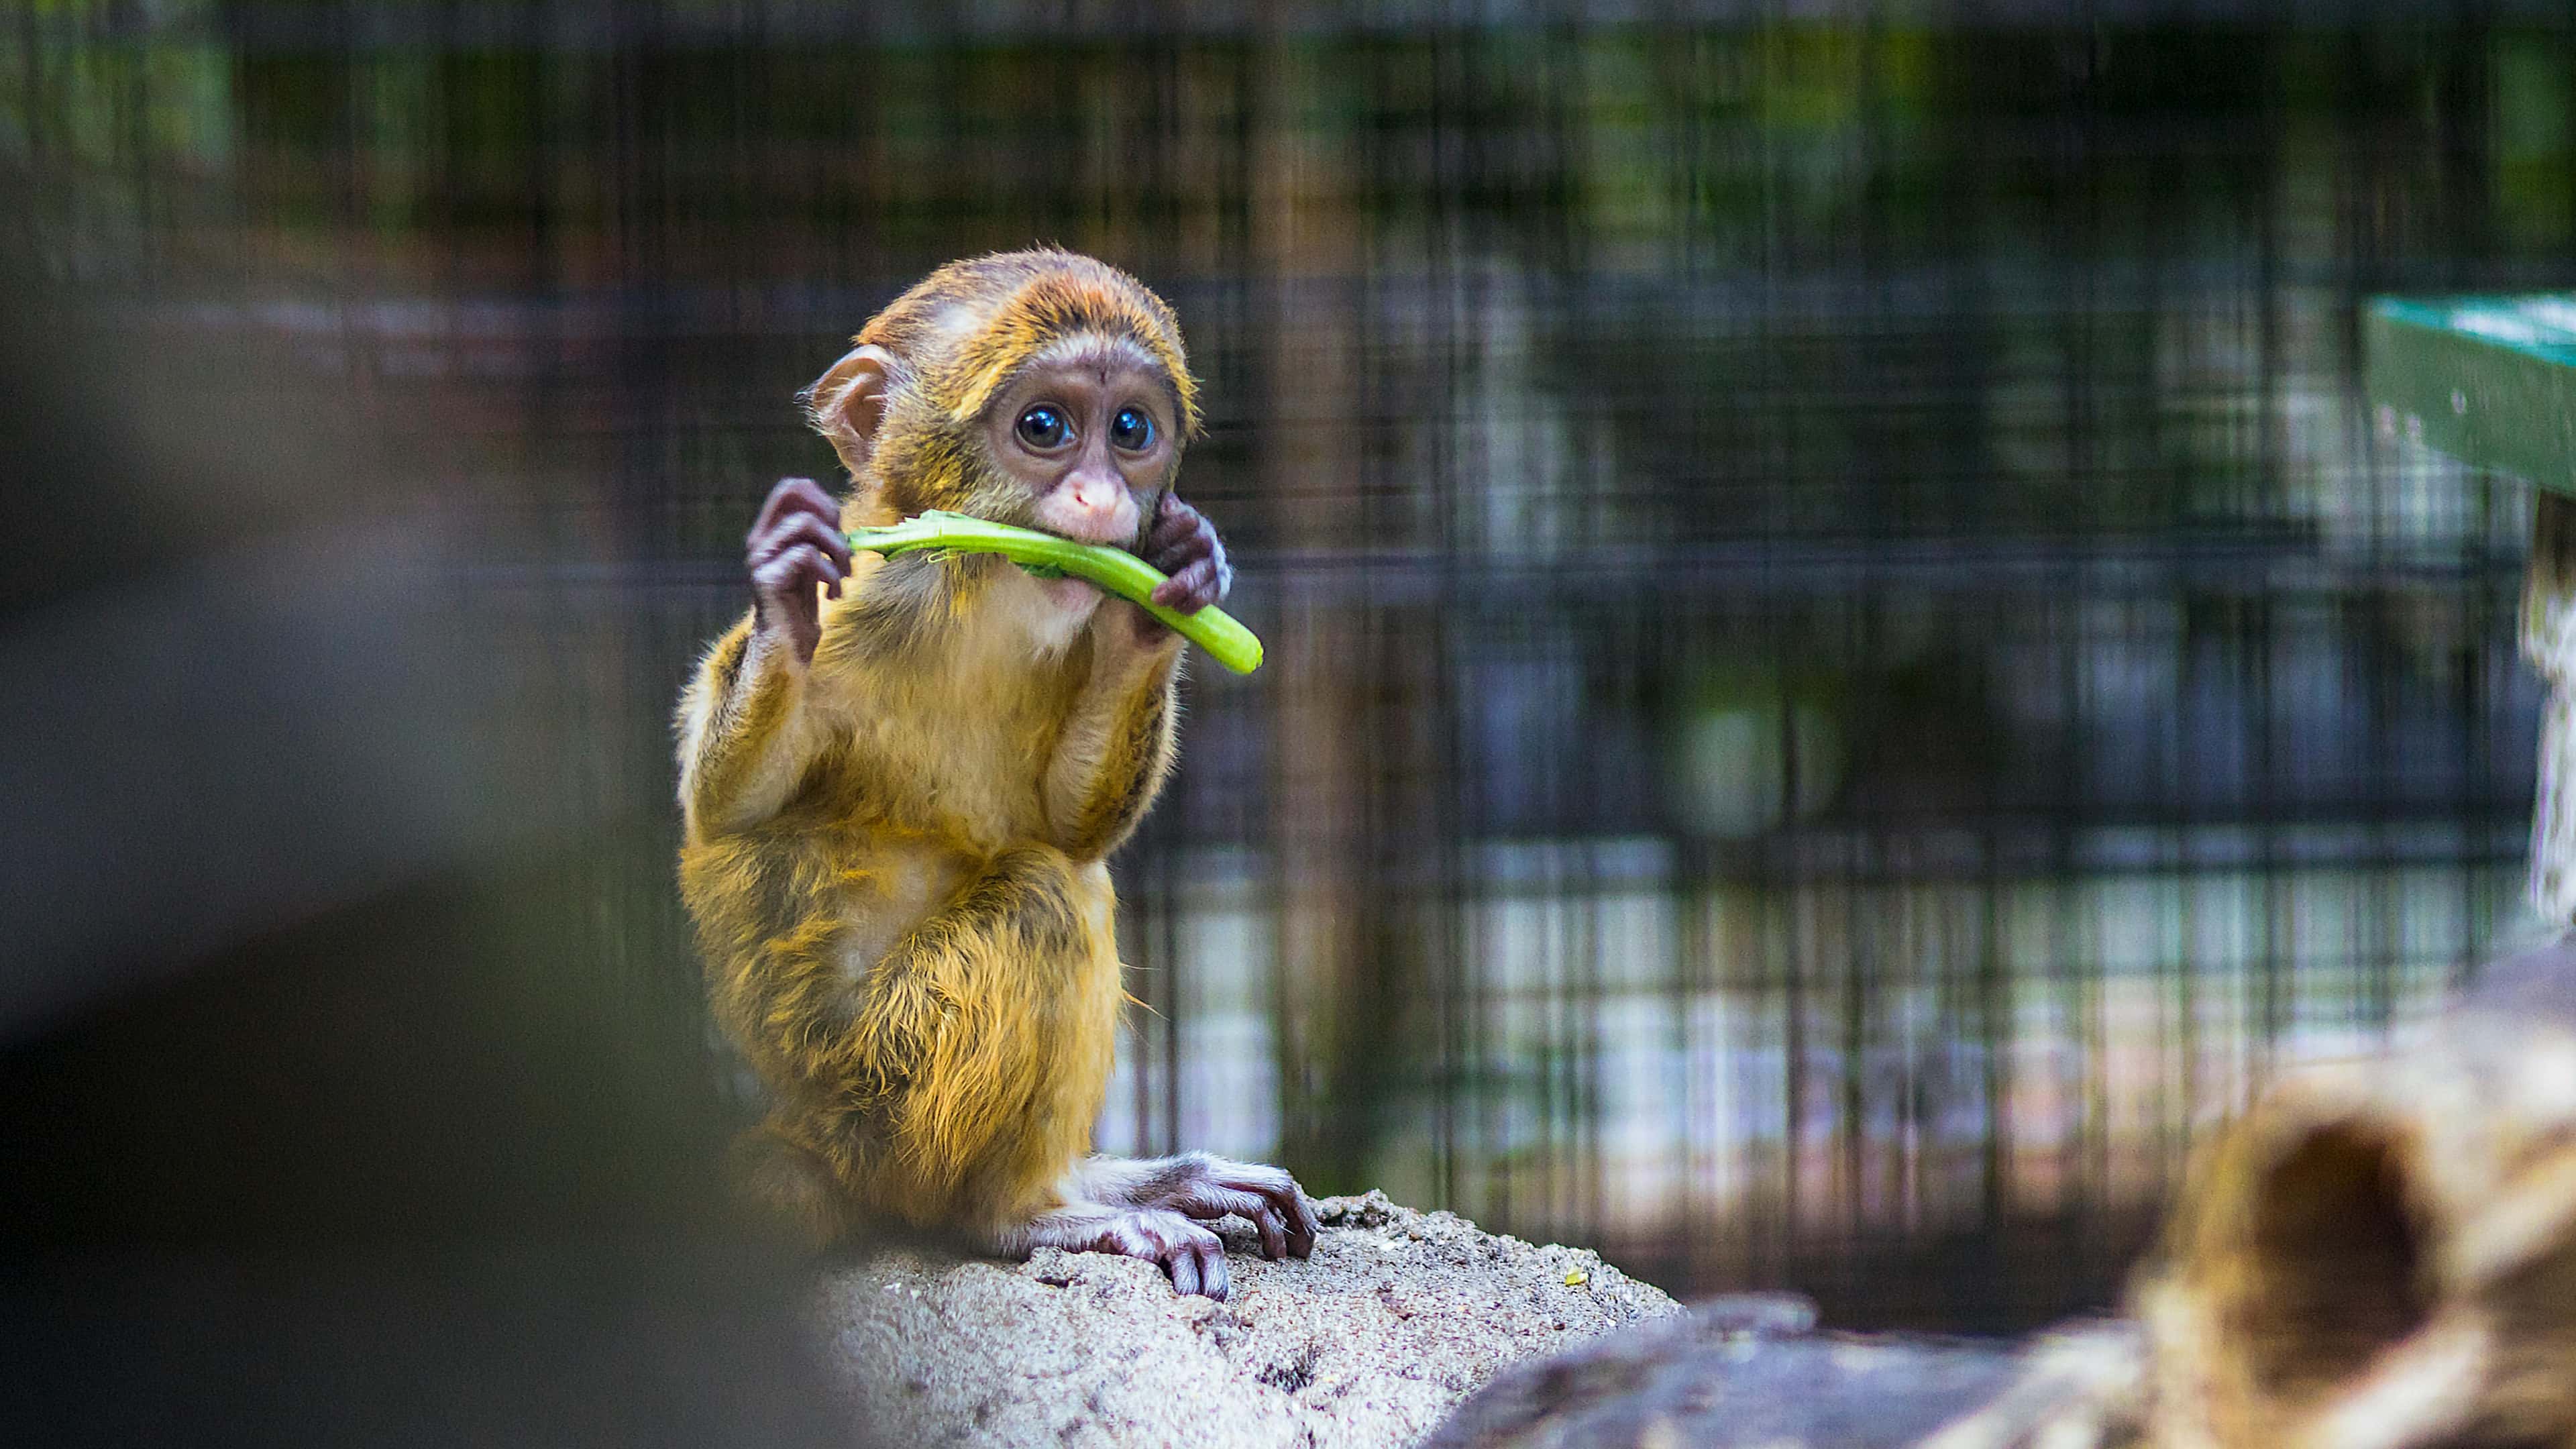 Monkey baby eats plants with relish.